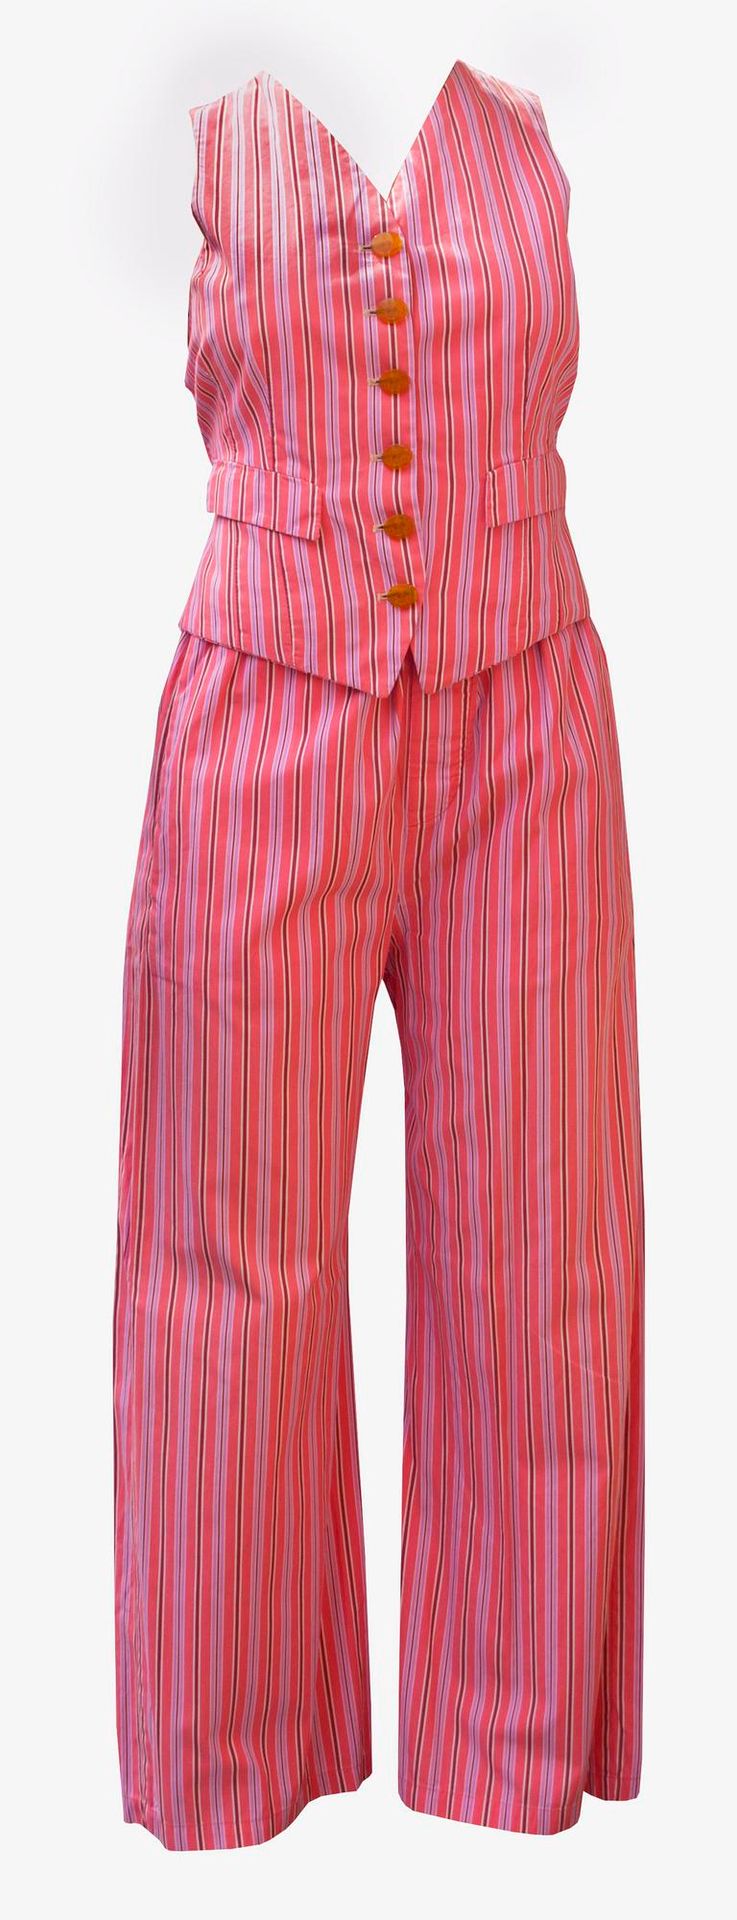 Null Vivienne Westwood 

TRAJE DE PAJAMAS



Descripción:

Traje de pijama de al&hellip;